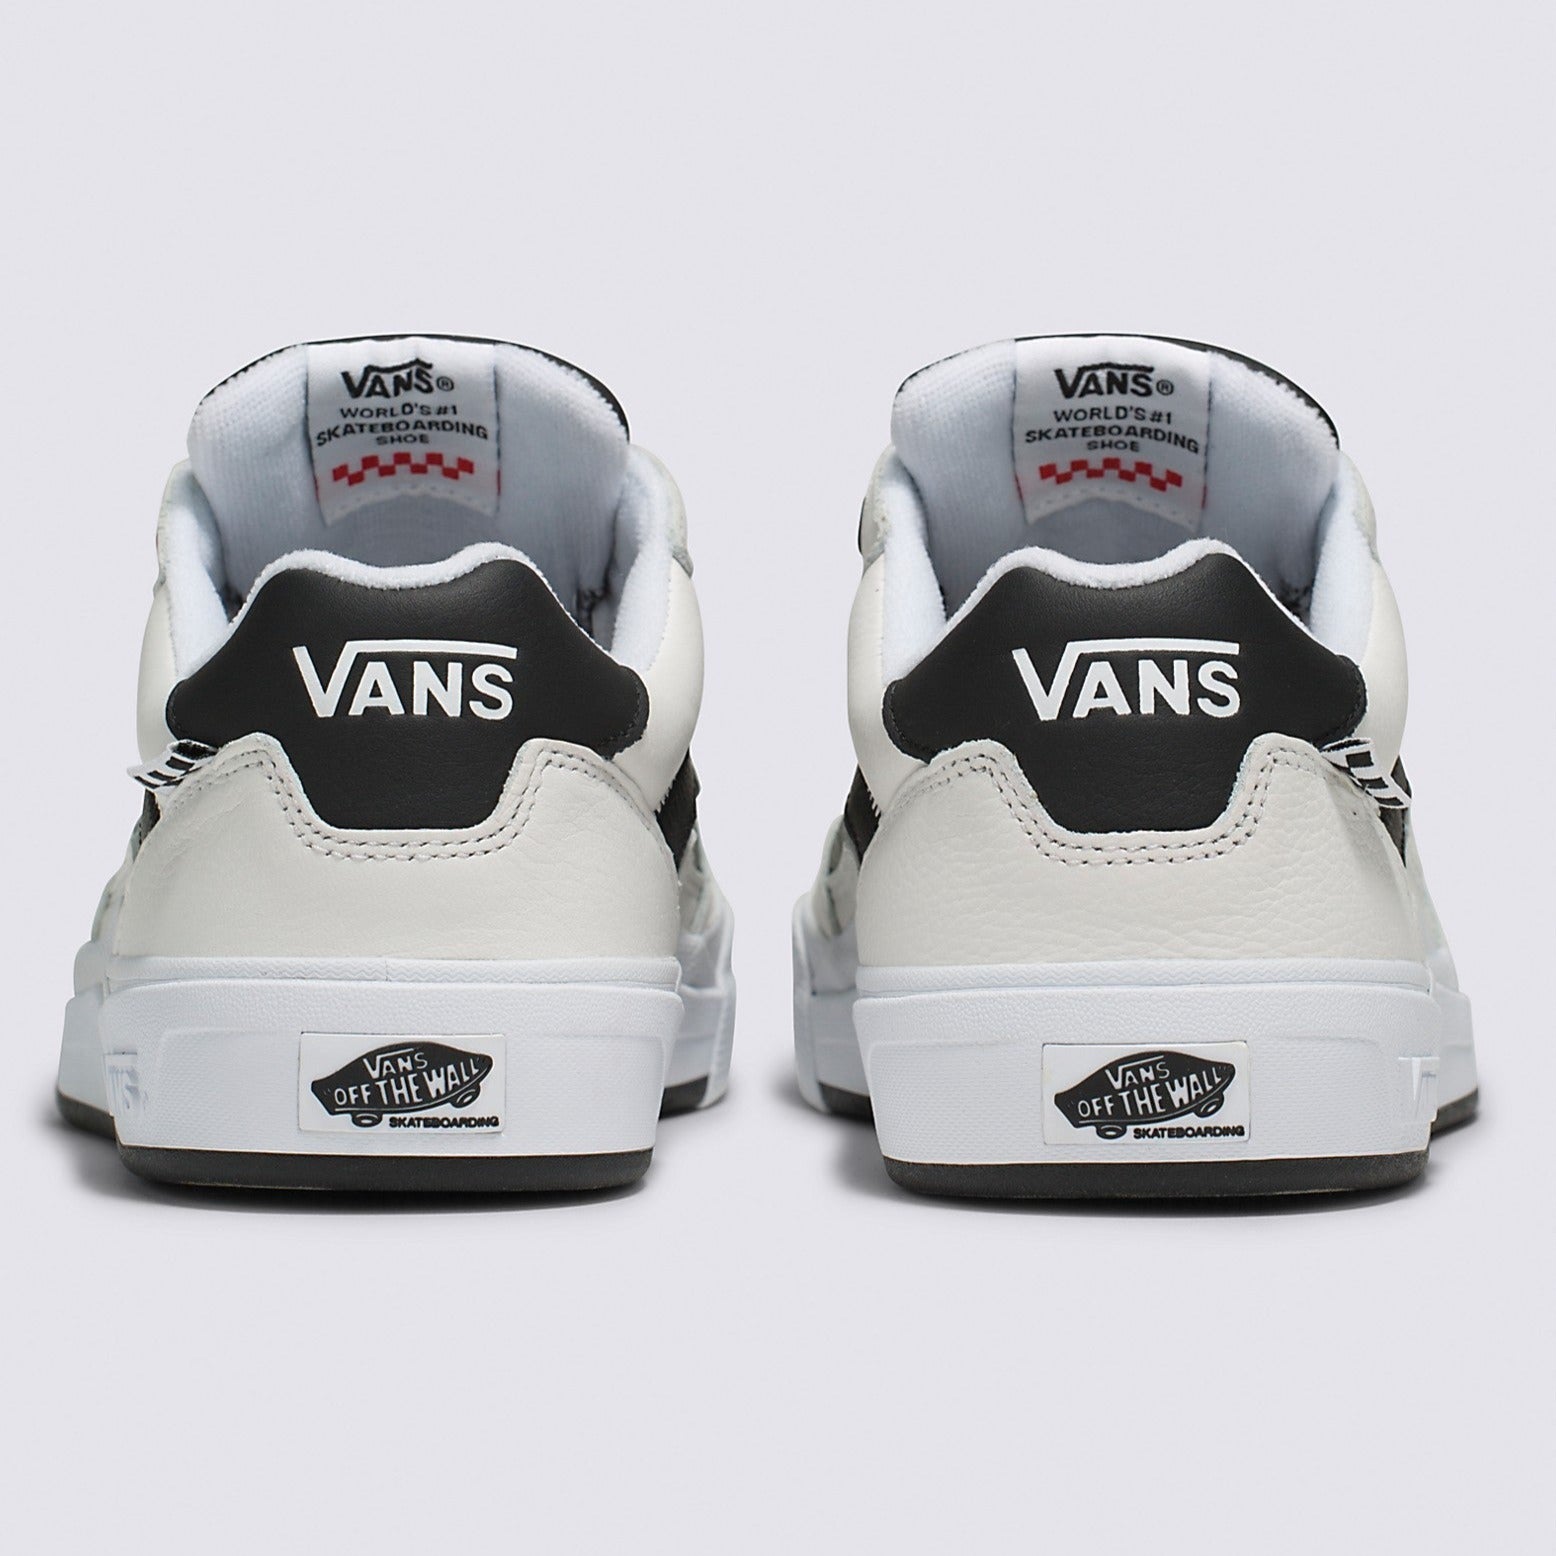 True White Leather Wayvee Vans Skate Shoe Back